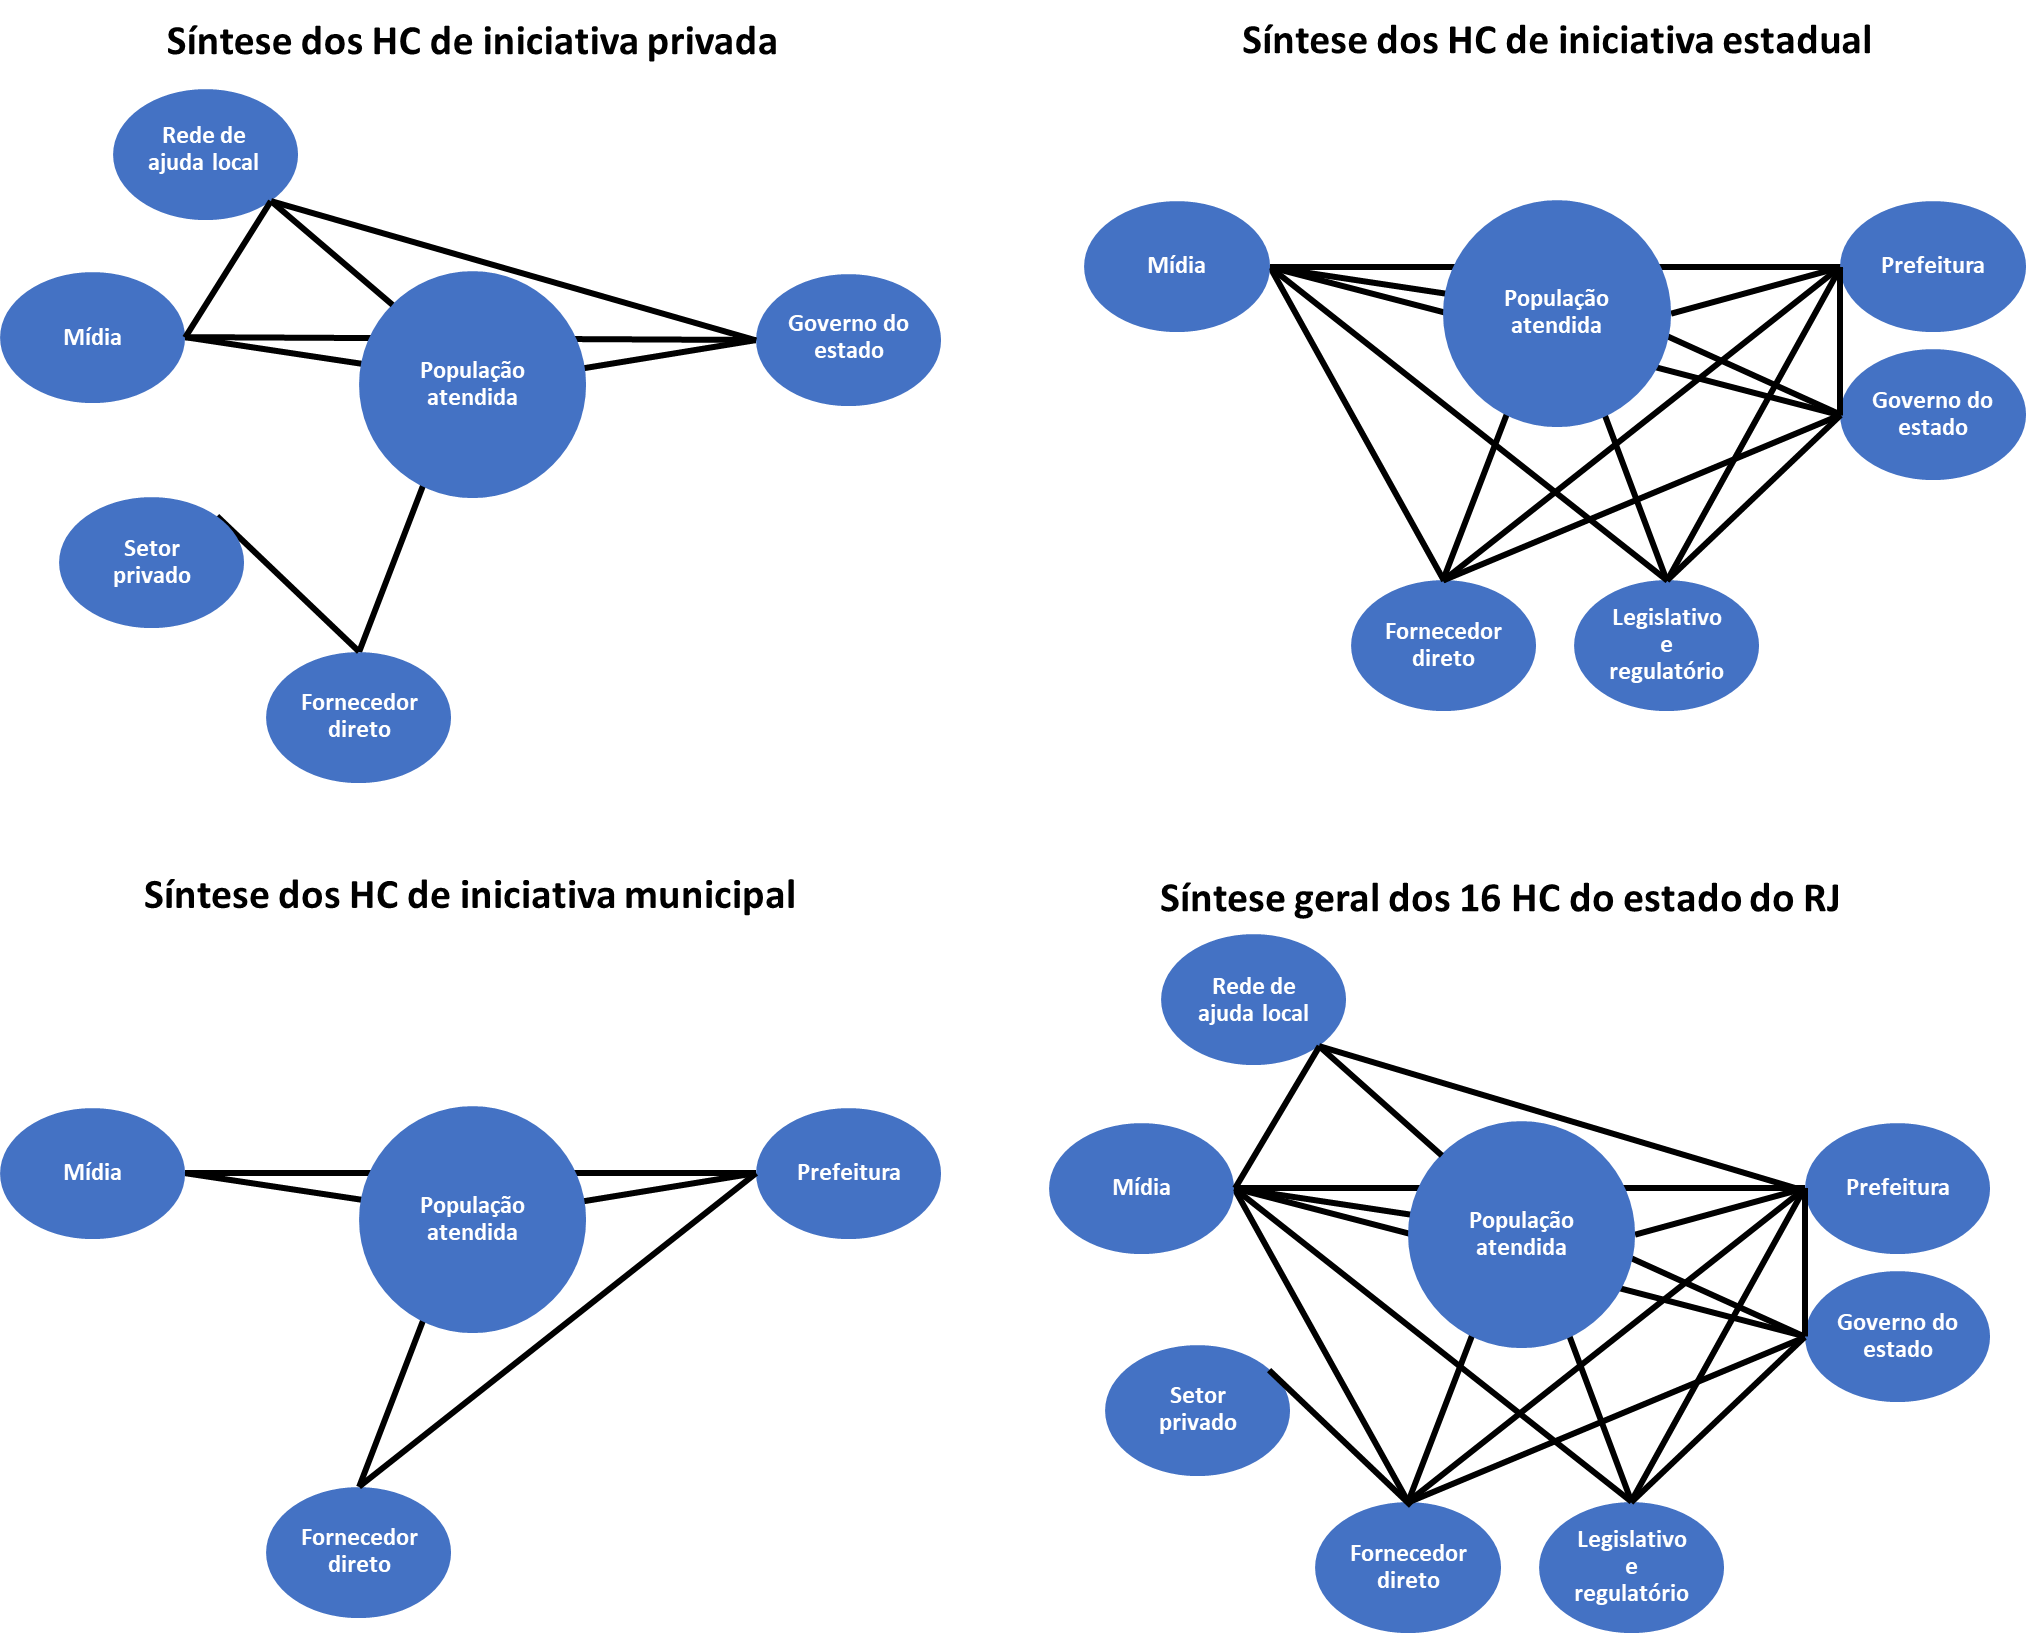 Síntese dos diagramas de relacionamento de stakeholders nos HC de iniciativa privada, estadual, municipal e síntese geral